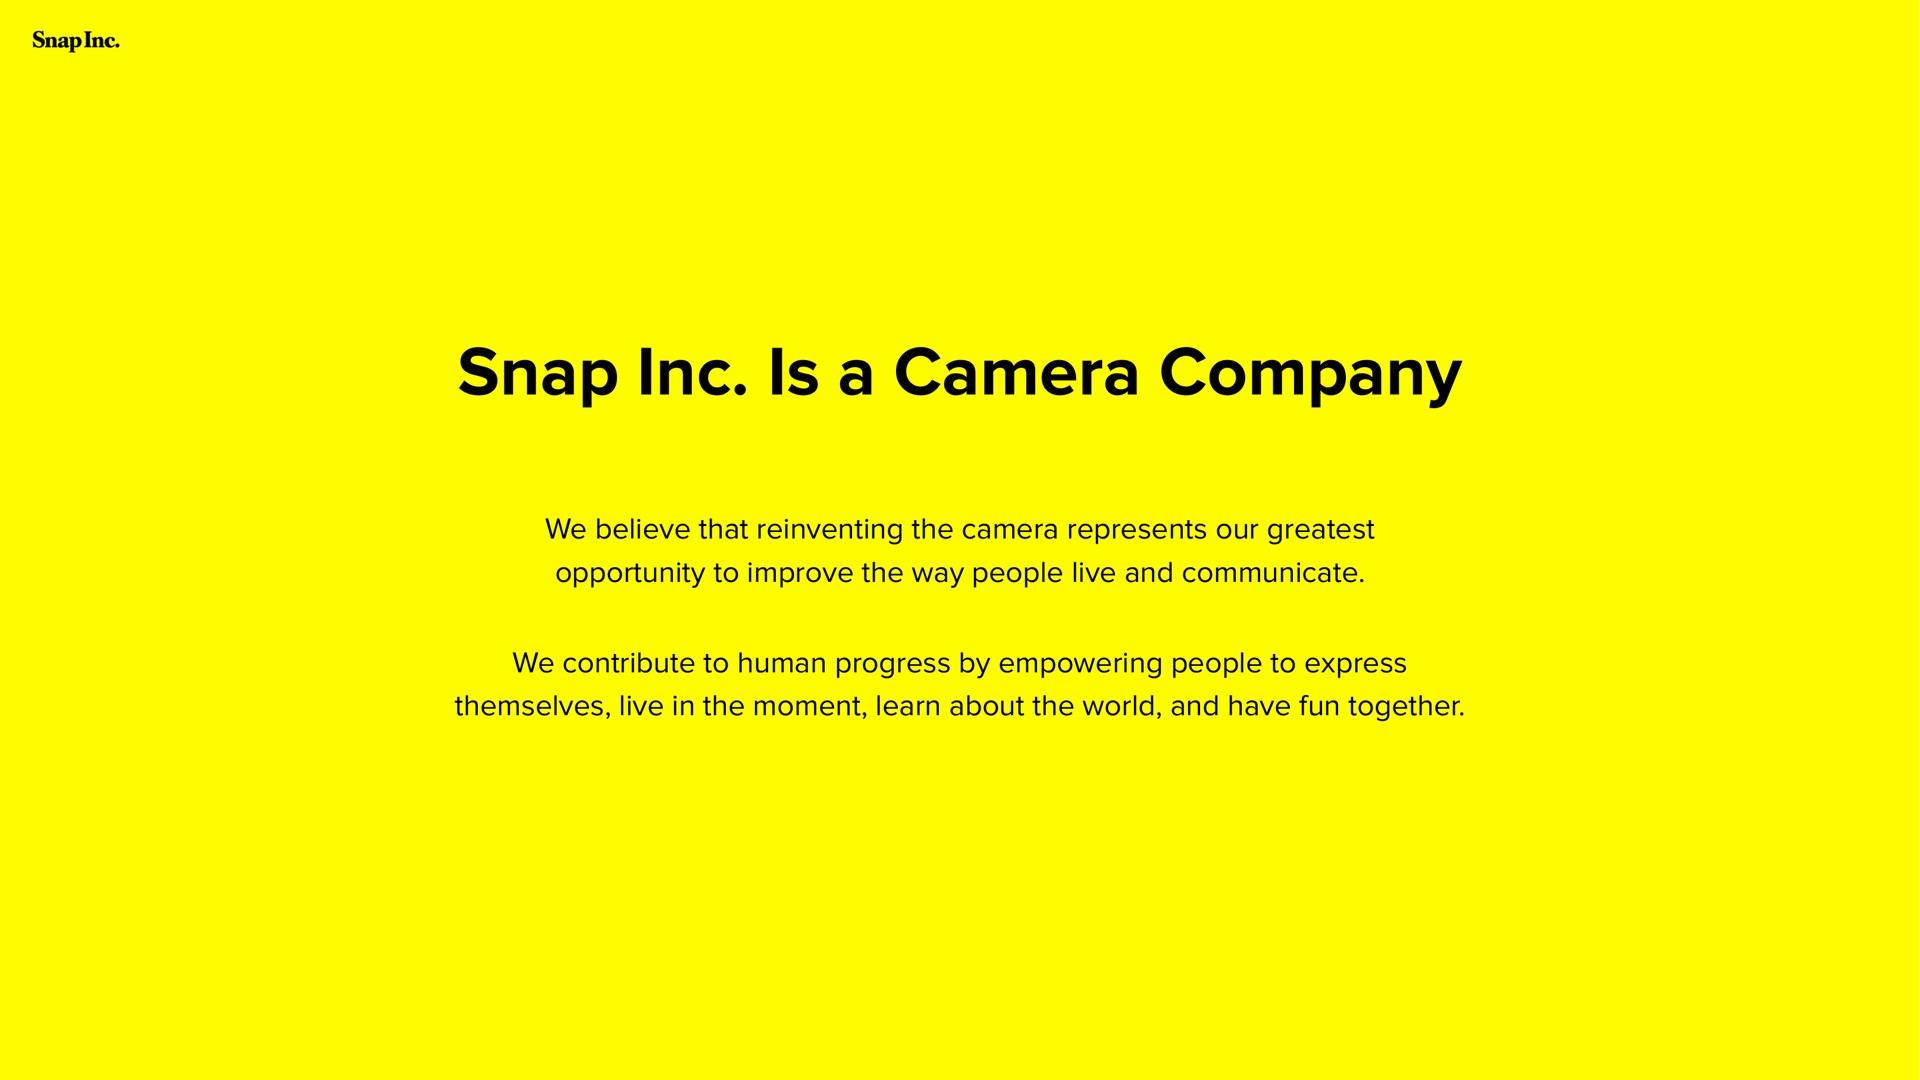 snap is a camera company | Snap Inc